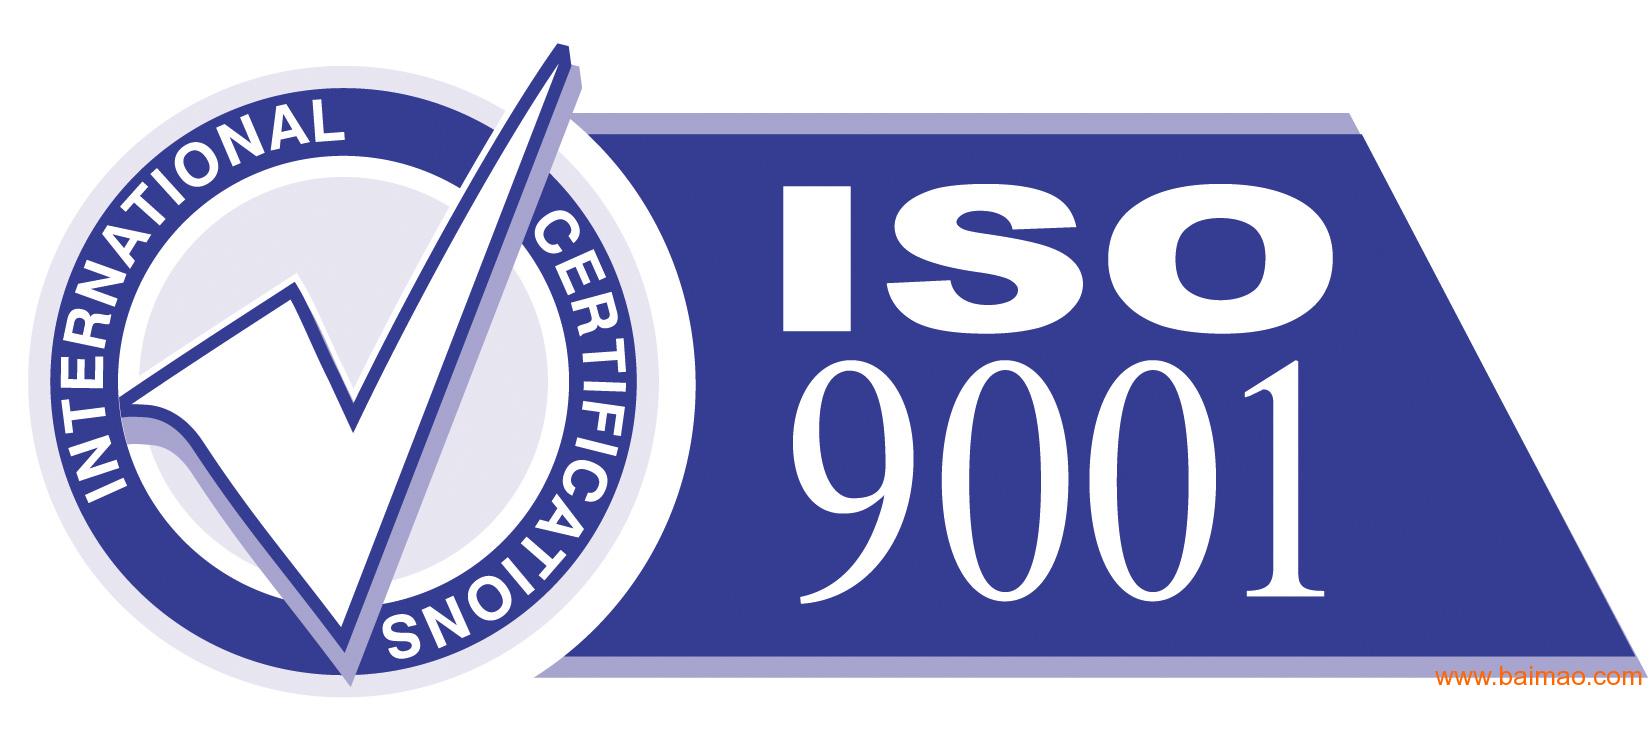 顺德iso9001认证管理评审